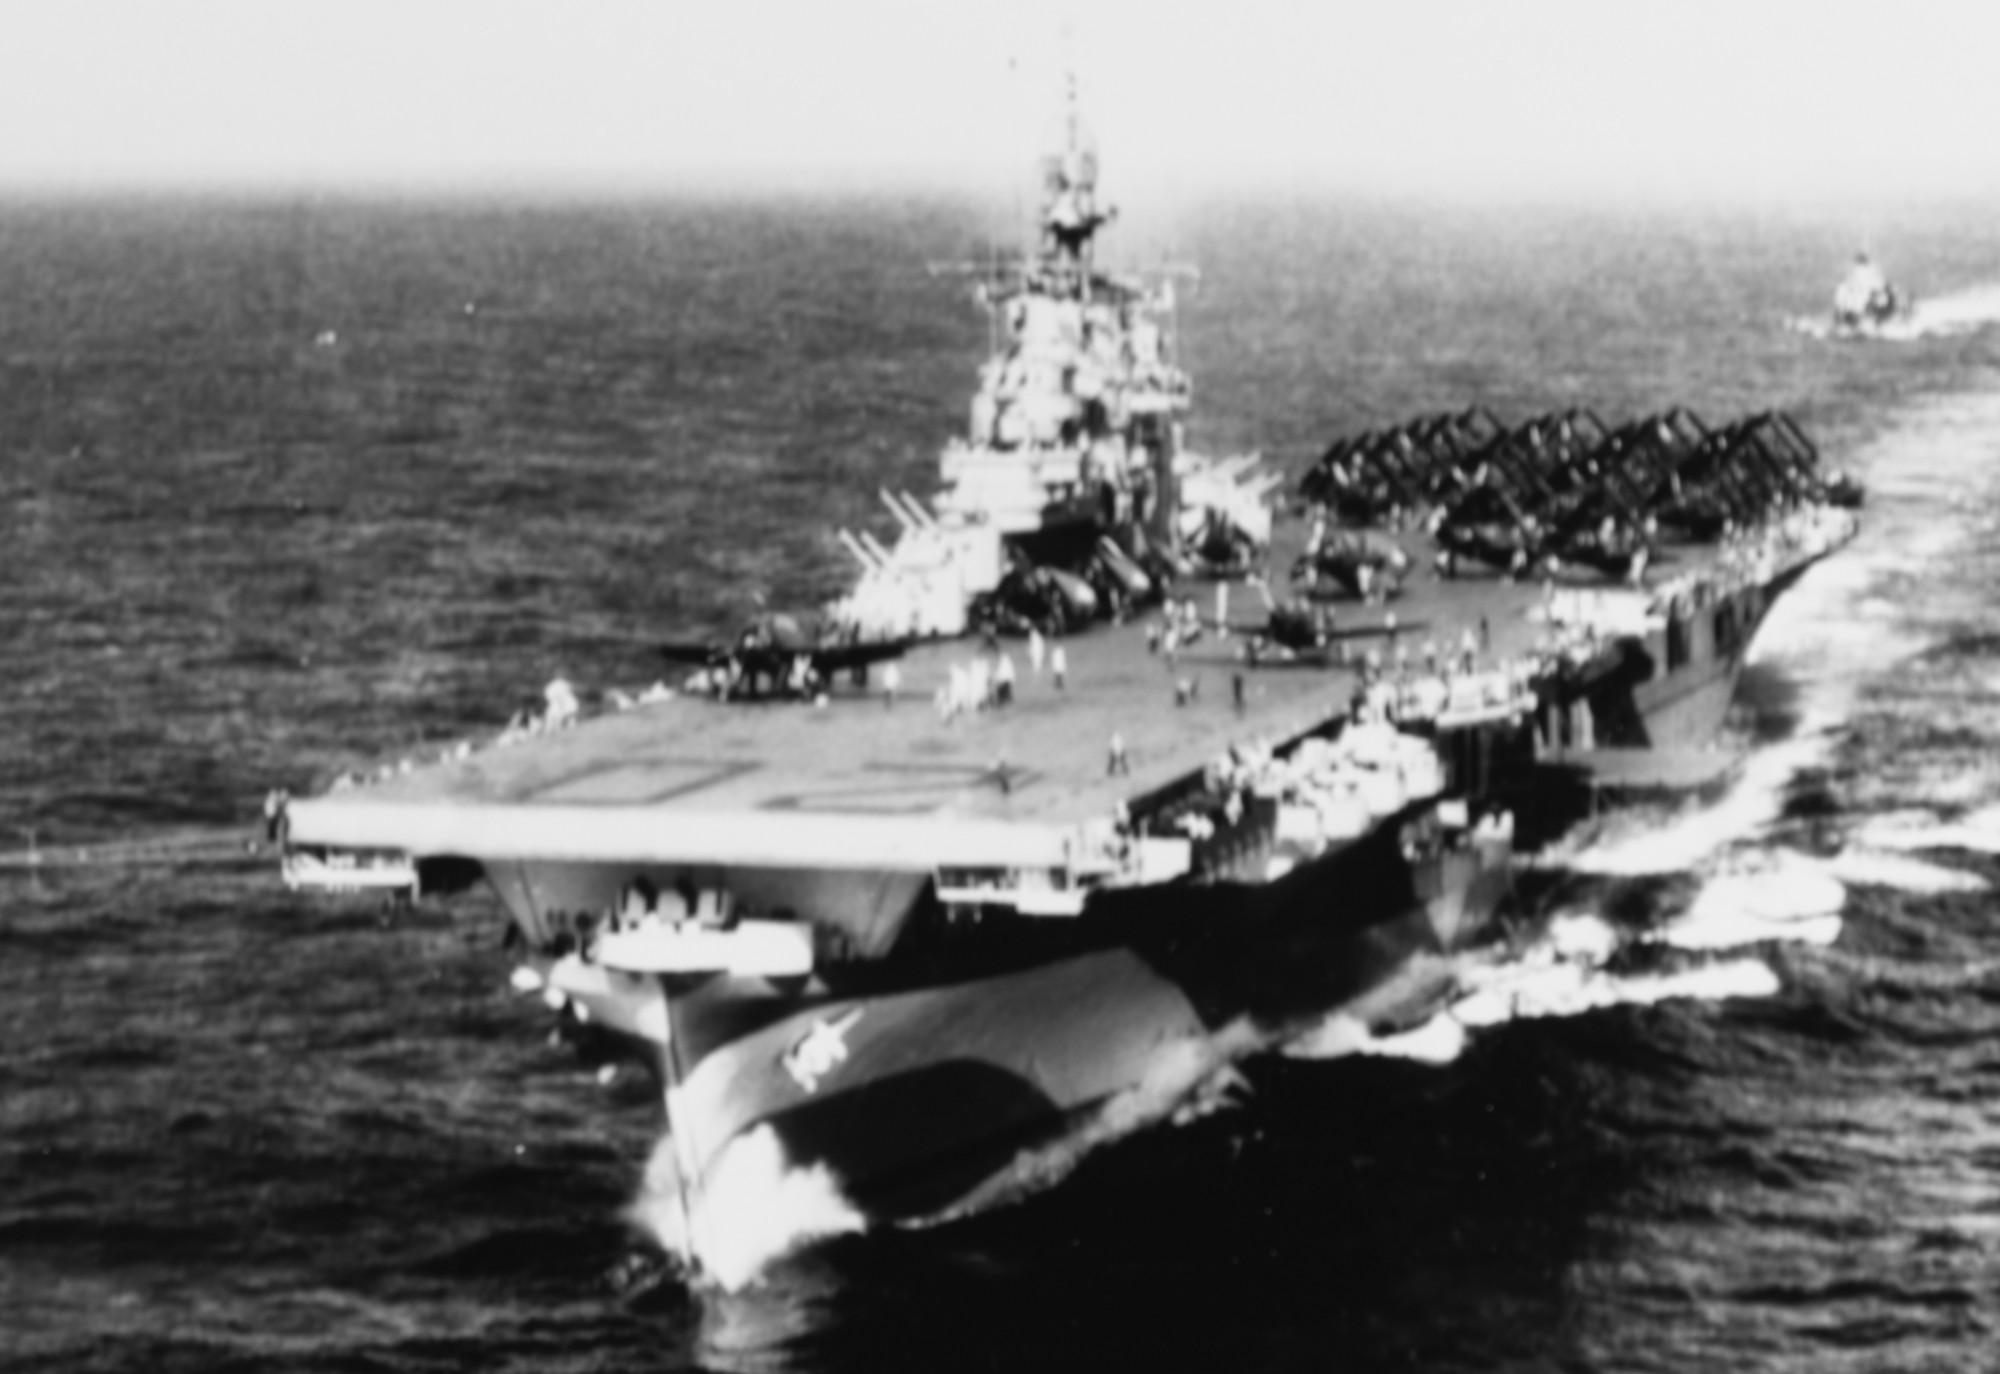 cva-20 uss bennington essex class aircraft carrier navy 14 shakedown cruise 1944